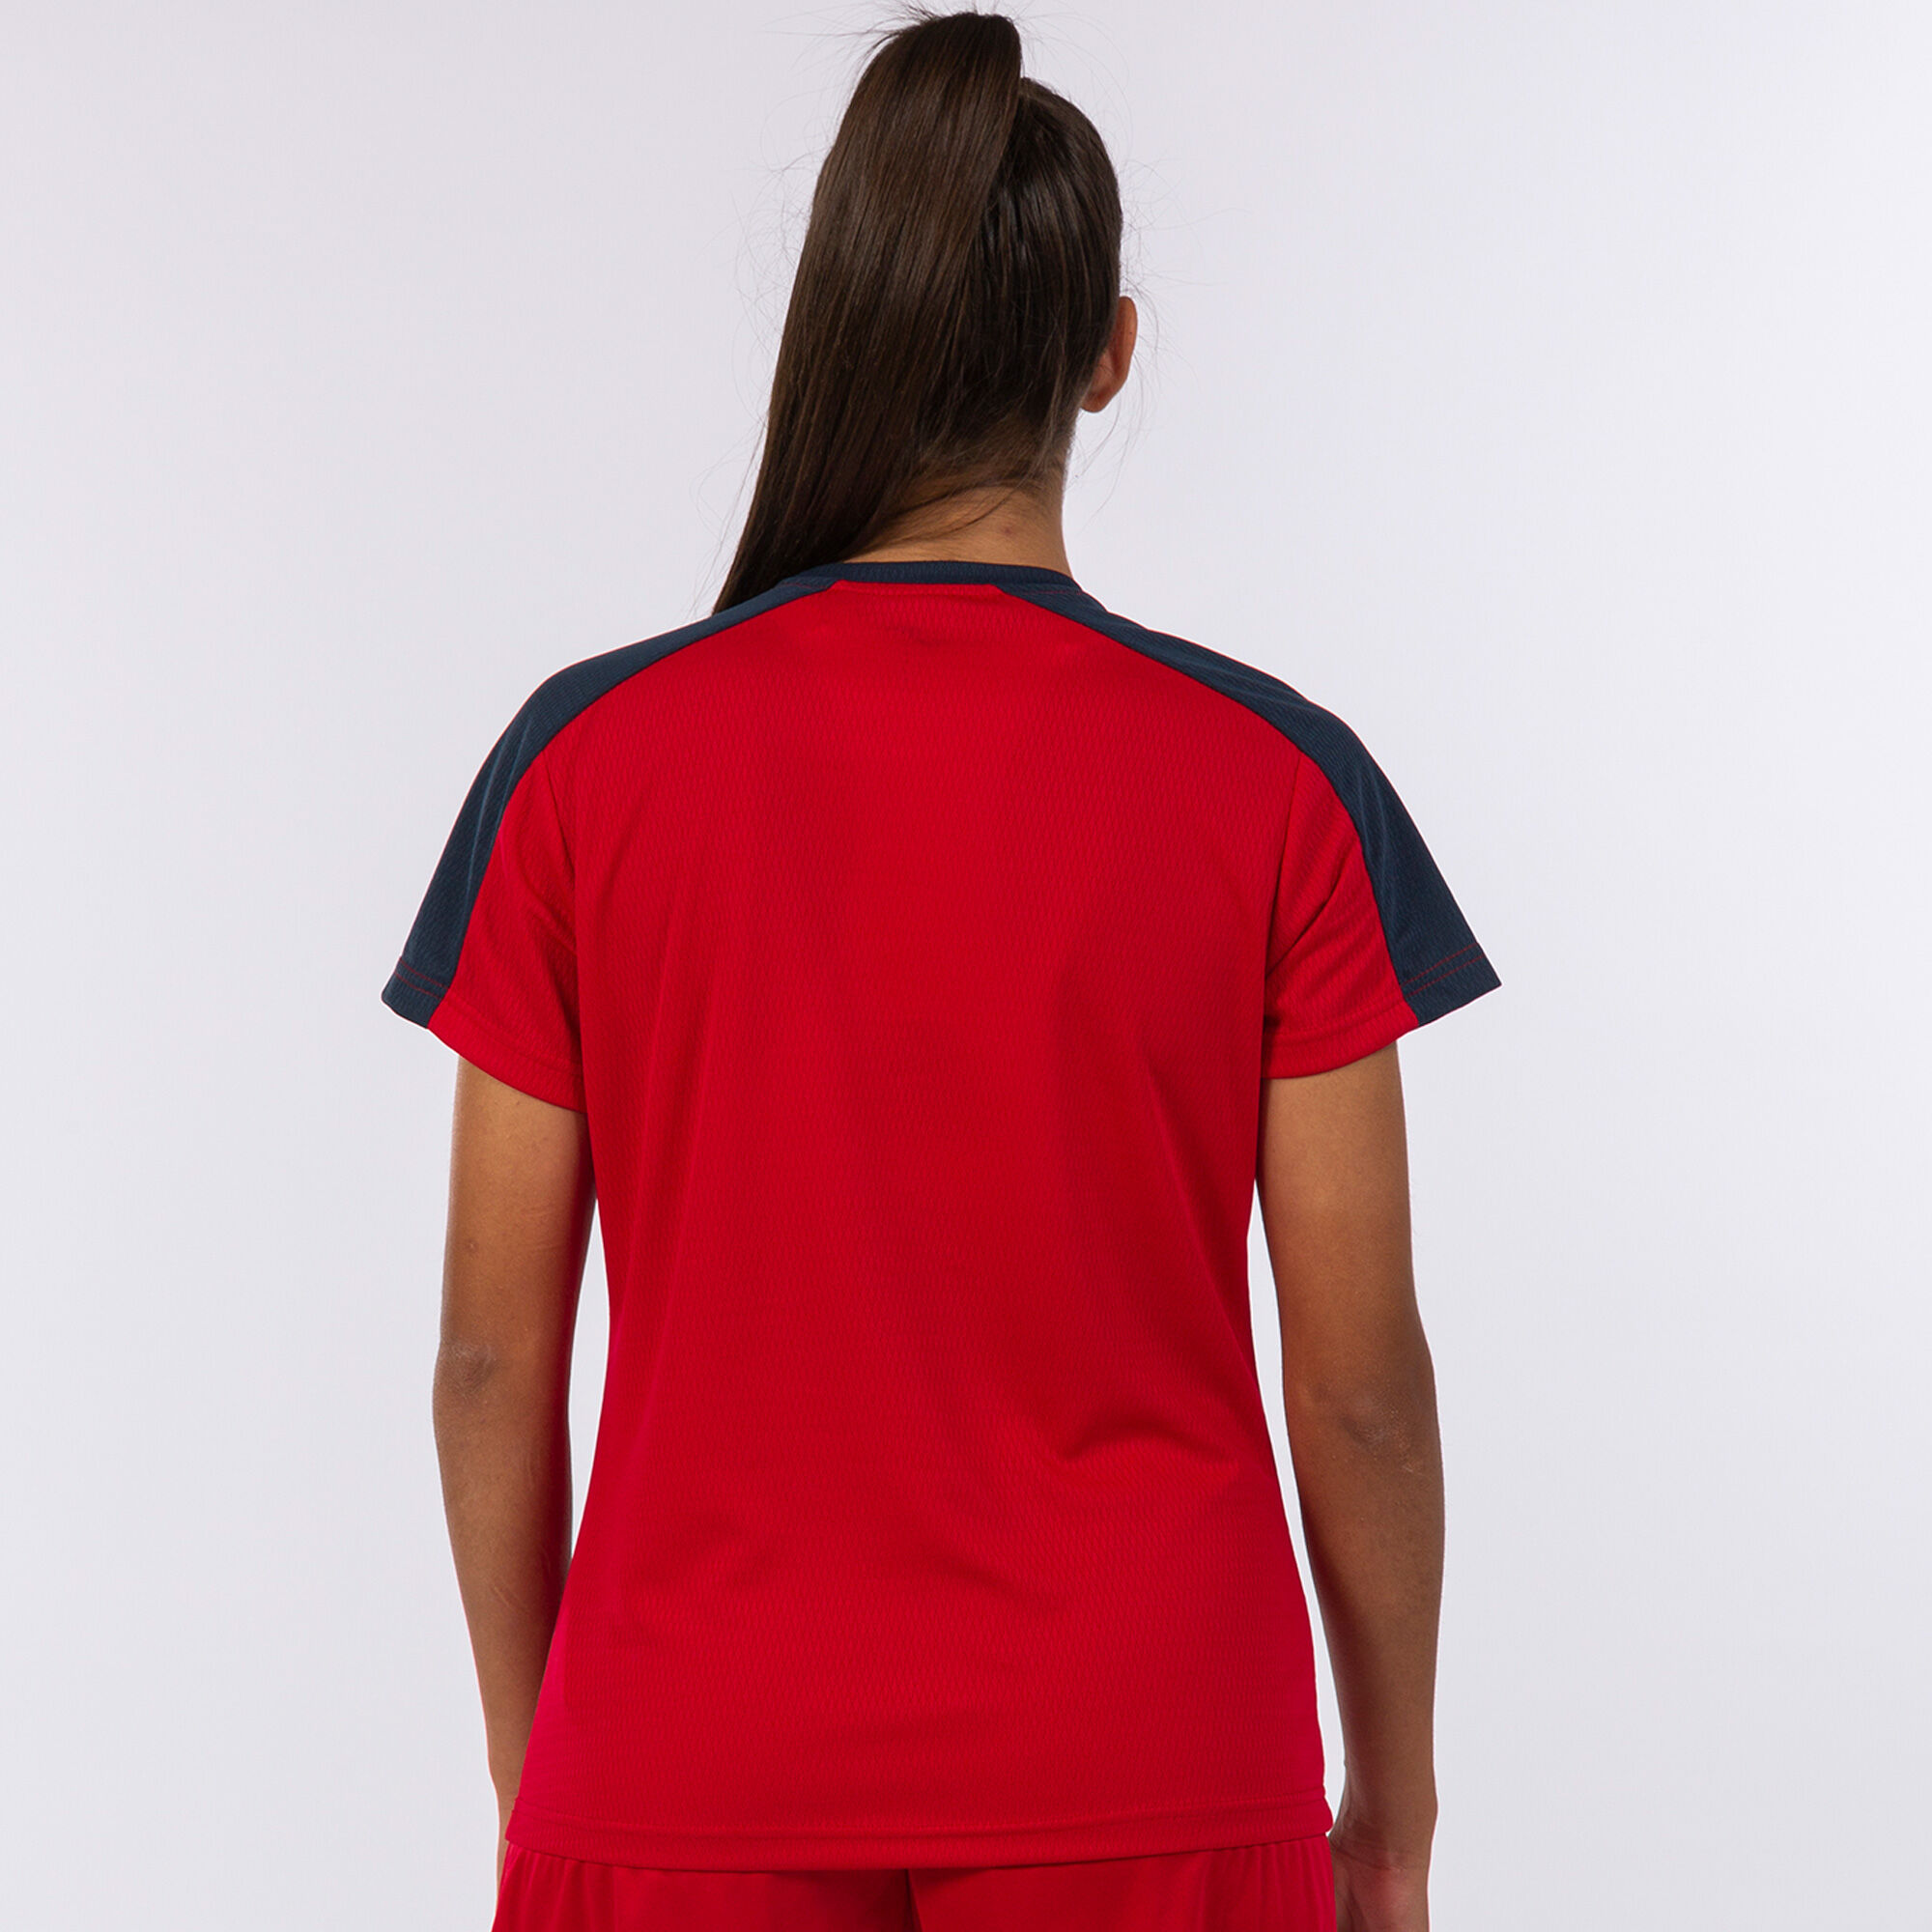 Camiseta manga corta mujer Eco Championship rojo marino